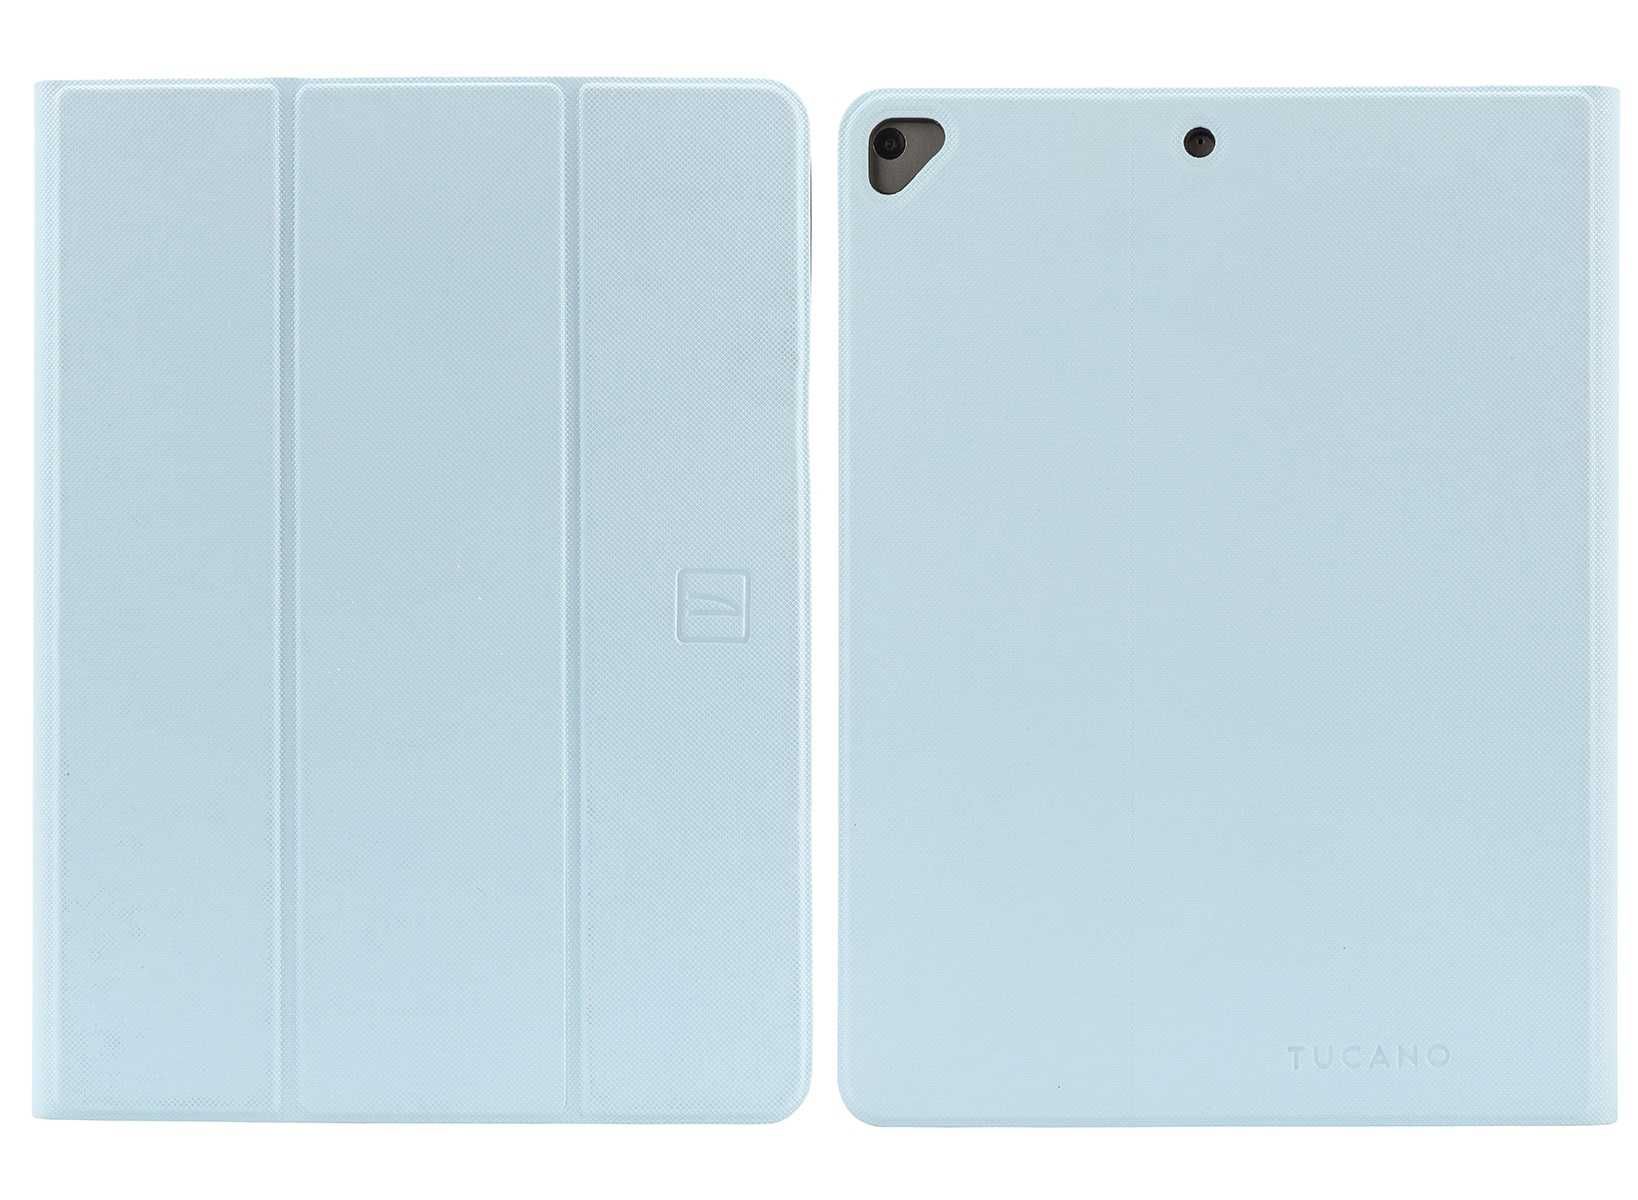 Чохол Tucano UP Plus Folio case for iPad 10.2", iPad Air 10,5", - 44%